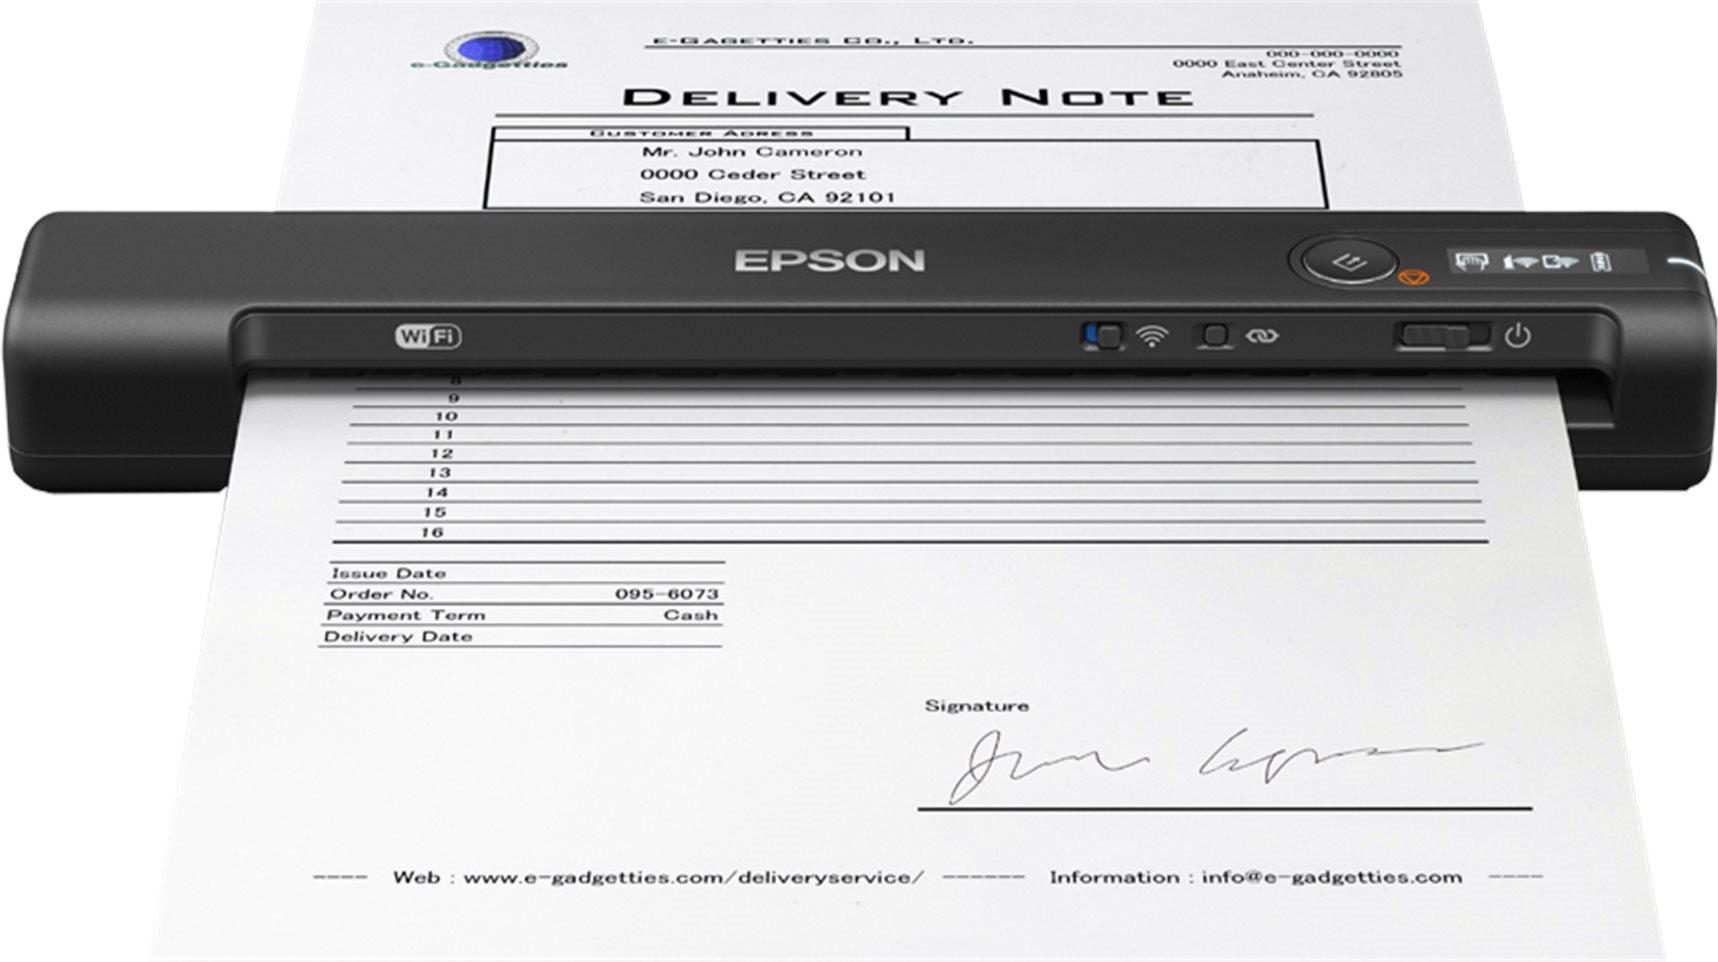 EPSON skener WorkForce ES-60W - A4/600x600dpi/USB/Wi-Fi/mobilní